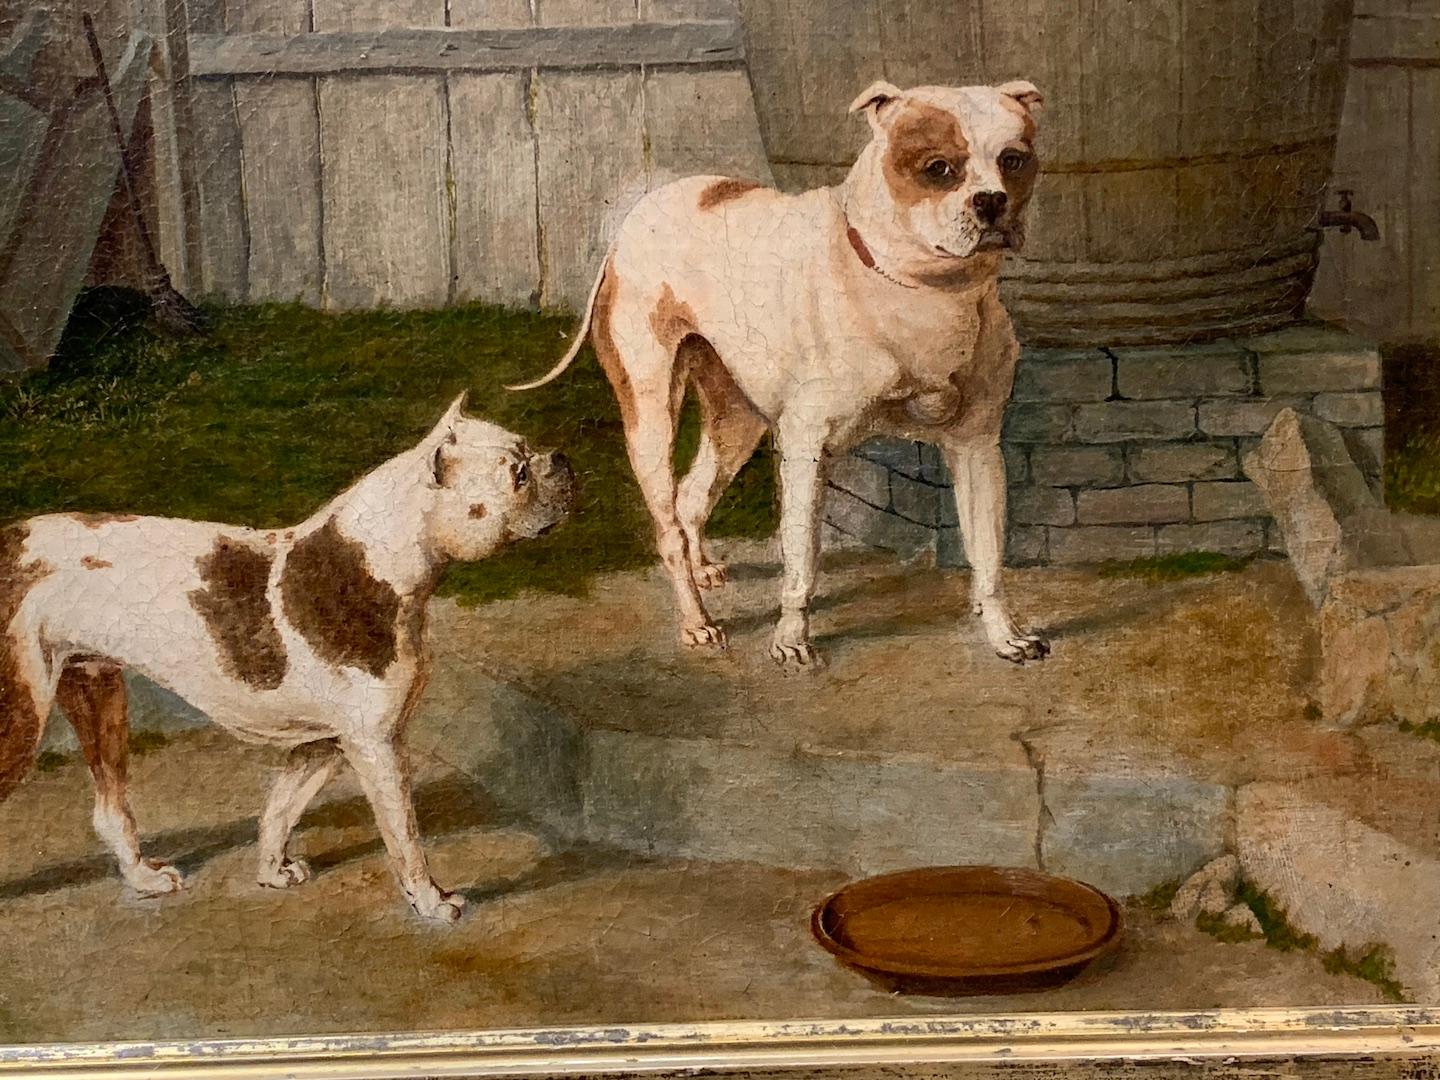 Magnifique portrait du XIXe siècle de deux chiens Bull dans une basse-cour.

Biographie de l'artiste :
Herring est né le 12 septembre 1795 à Blackfriars, Londres, l'aîné des neuf enfants de Benjamin Herring (mort en 1871) et de Sarah Jemima (morte